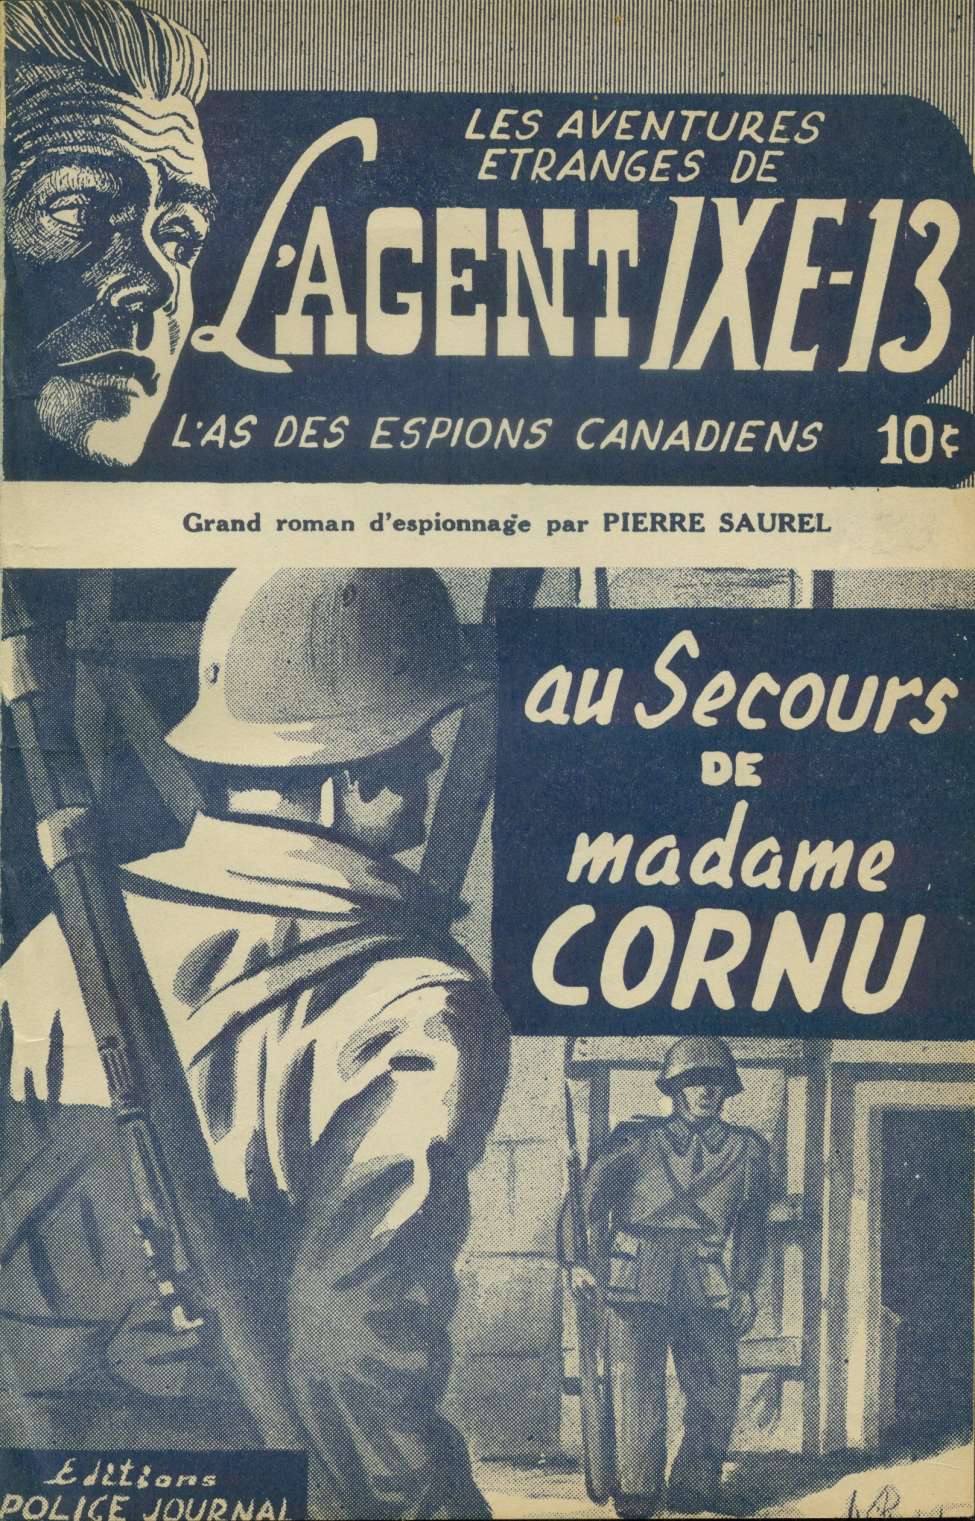 Comic Book Cover For L'Agent IXE-13 v1 10 - Au secours de madame Cornu